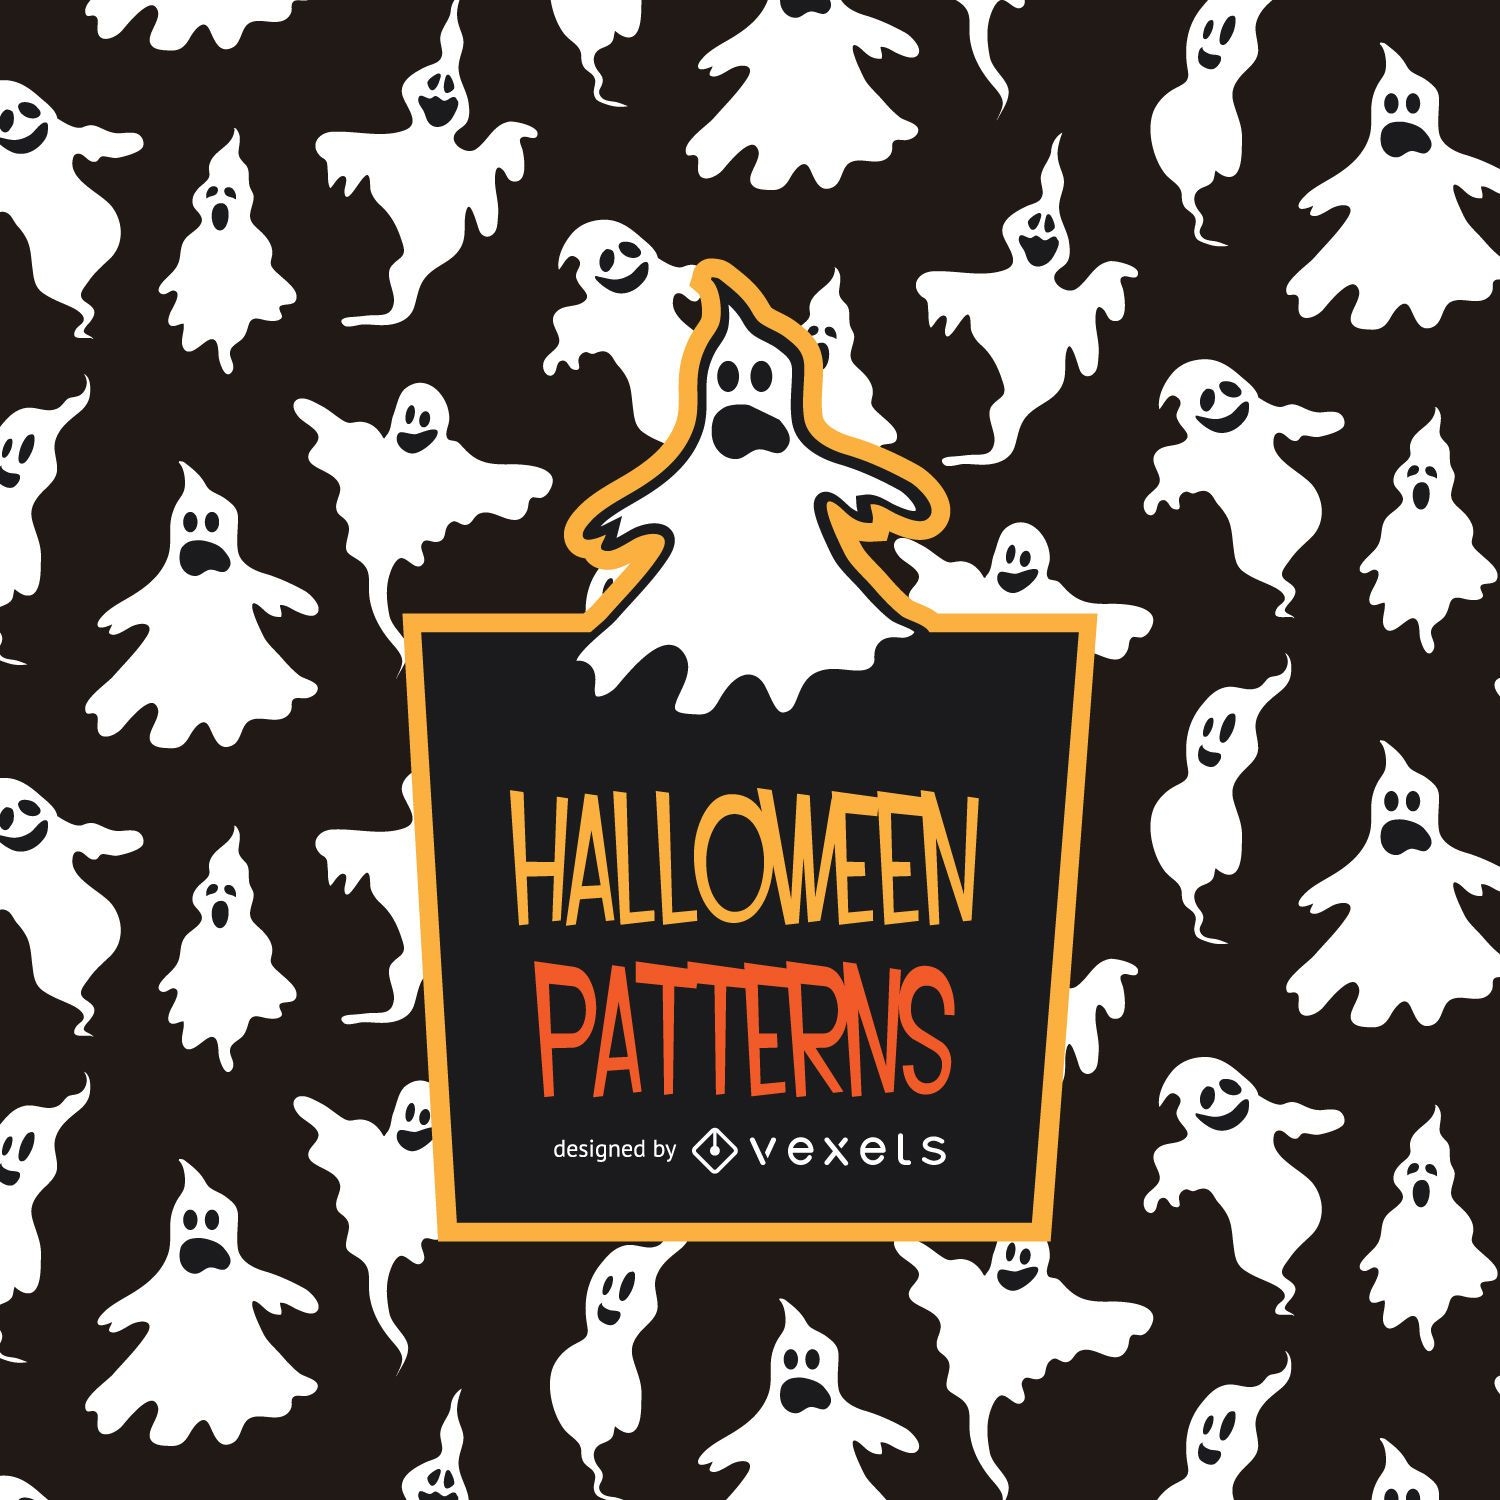 Spooky Halloween ghost pattern